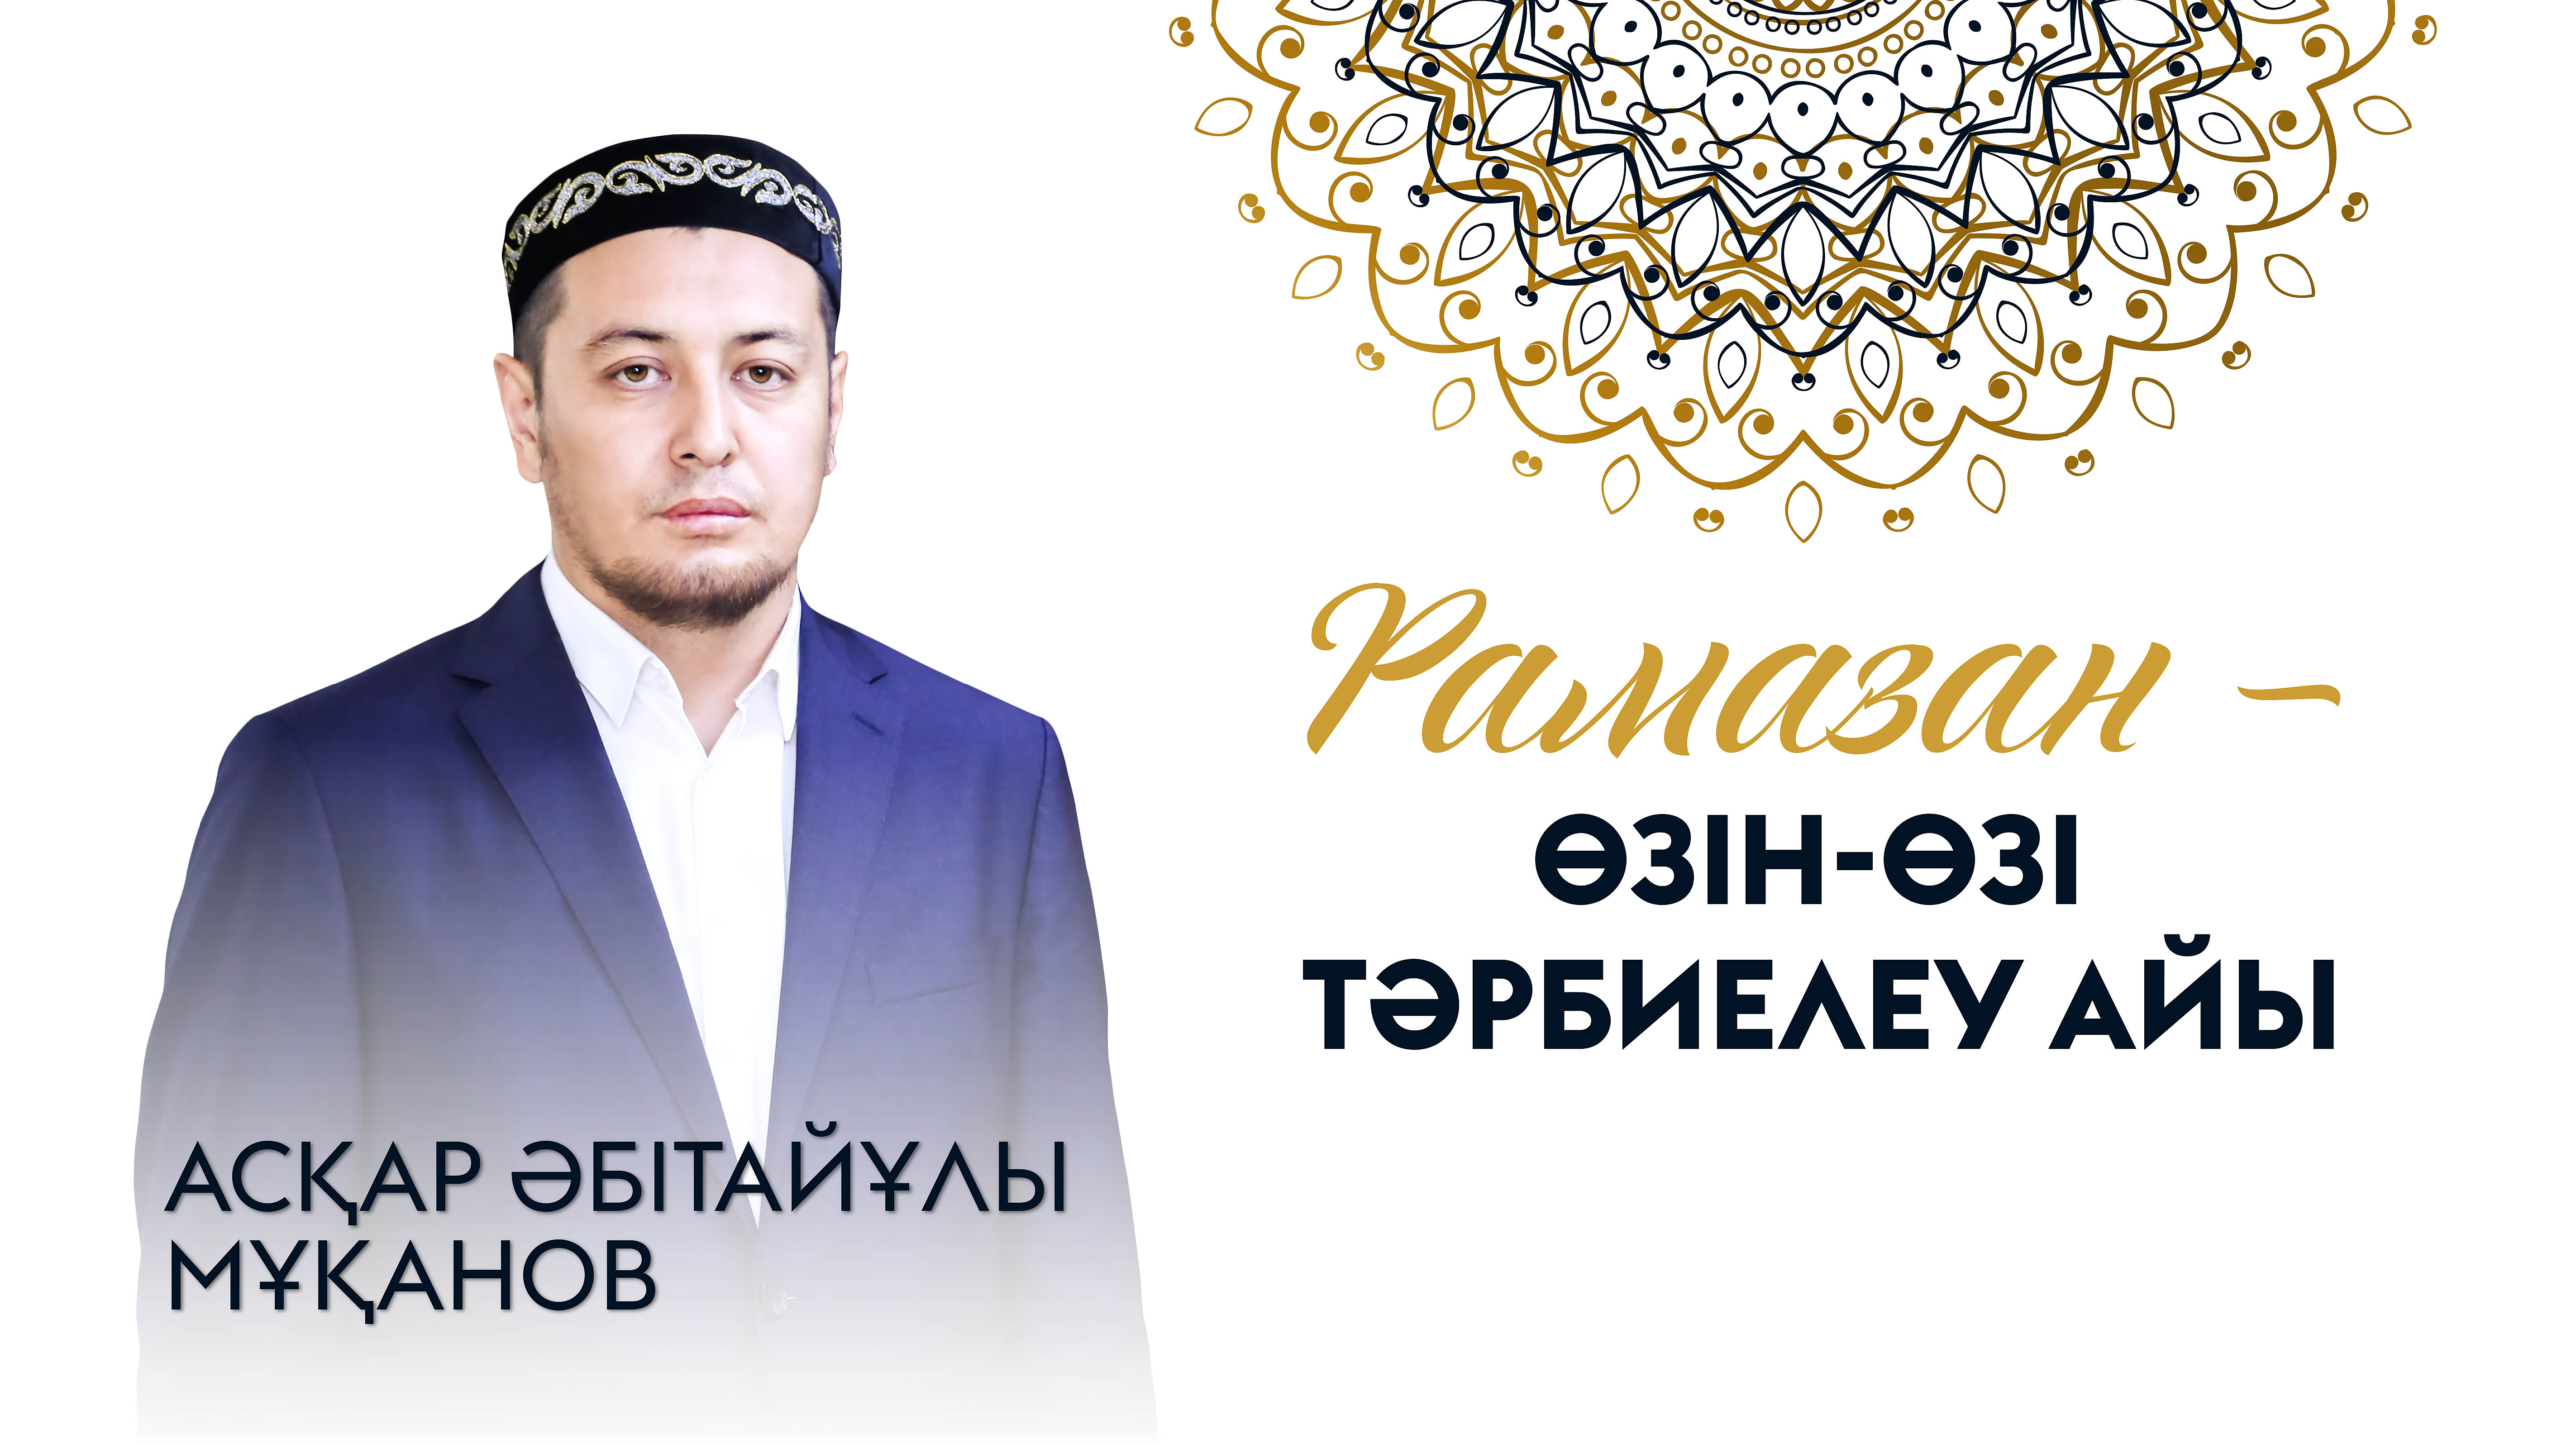 Асқар Мұқанов: Рамазан – өзін-өзі тәрбиелеу айы